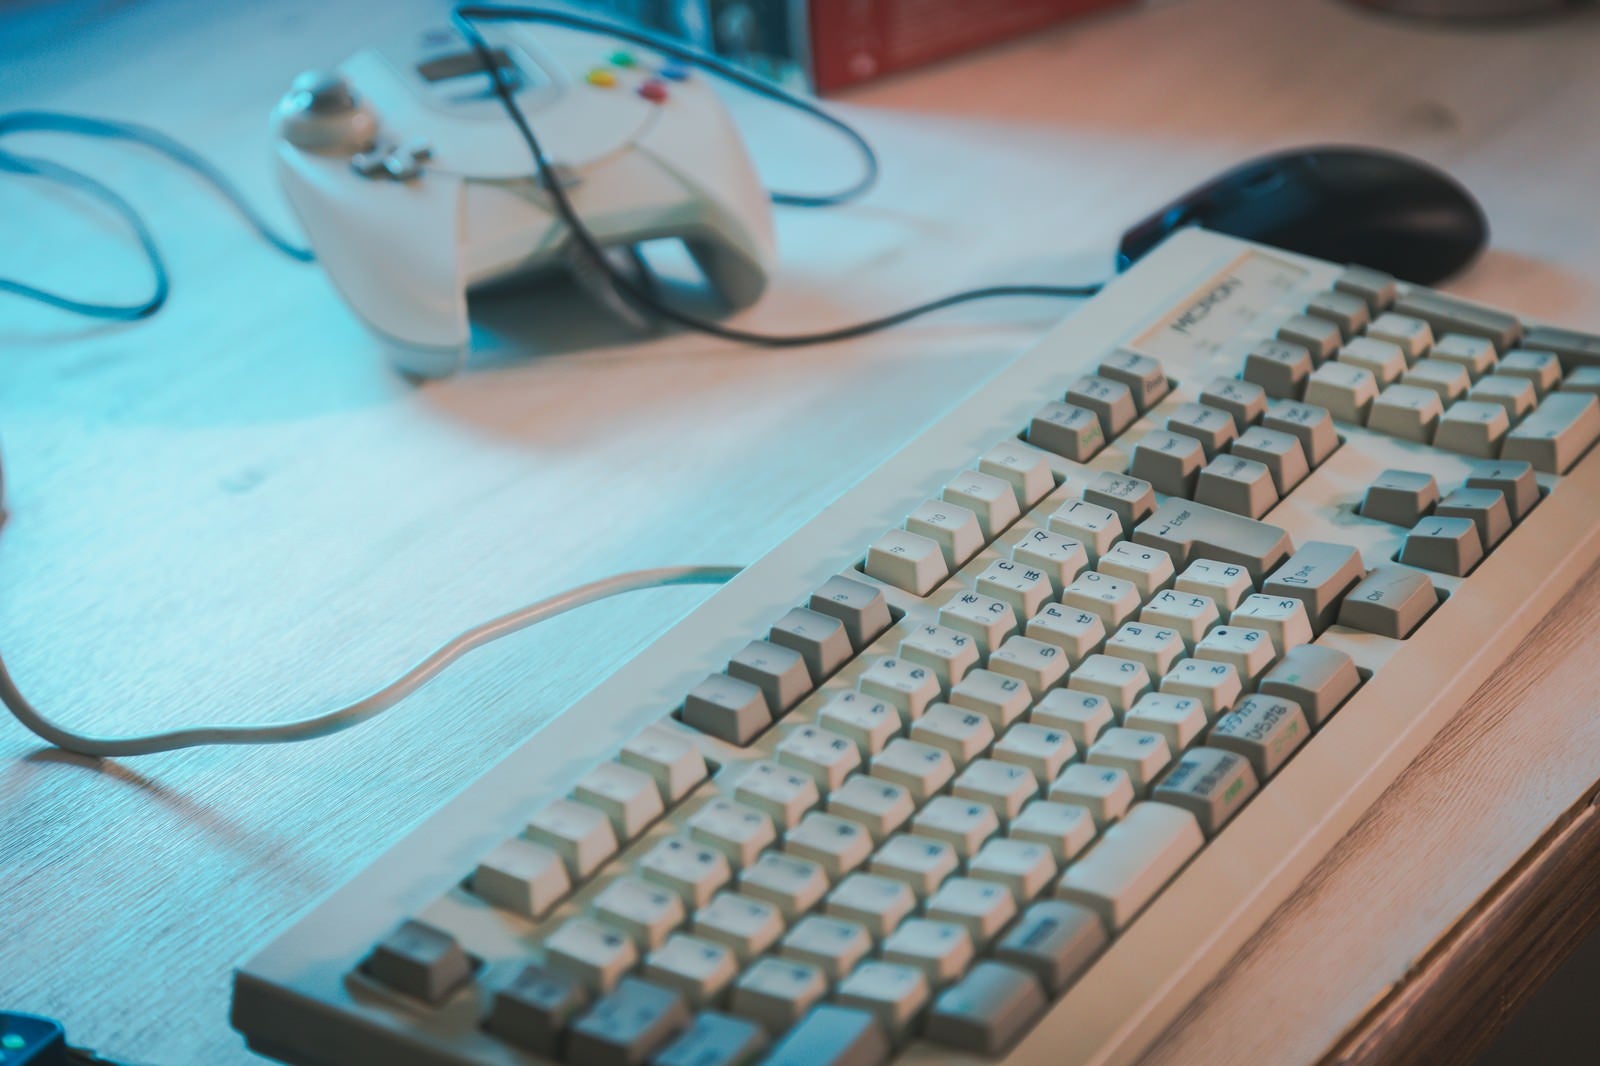 「デスク上の古いキーボード」の写真